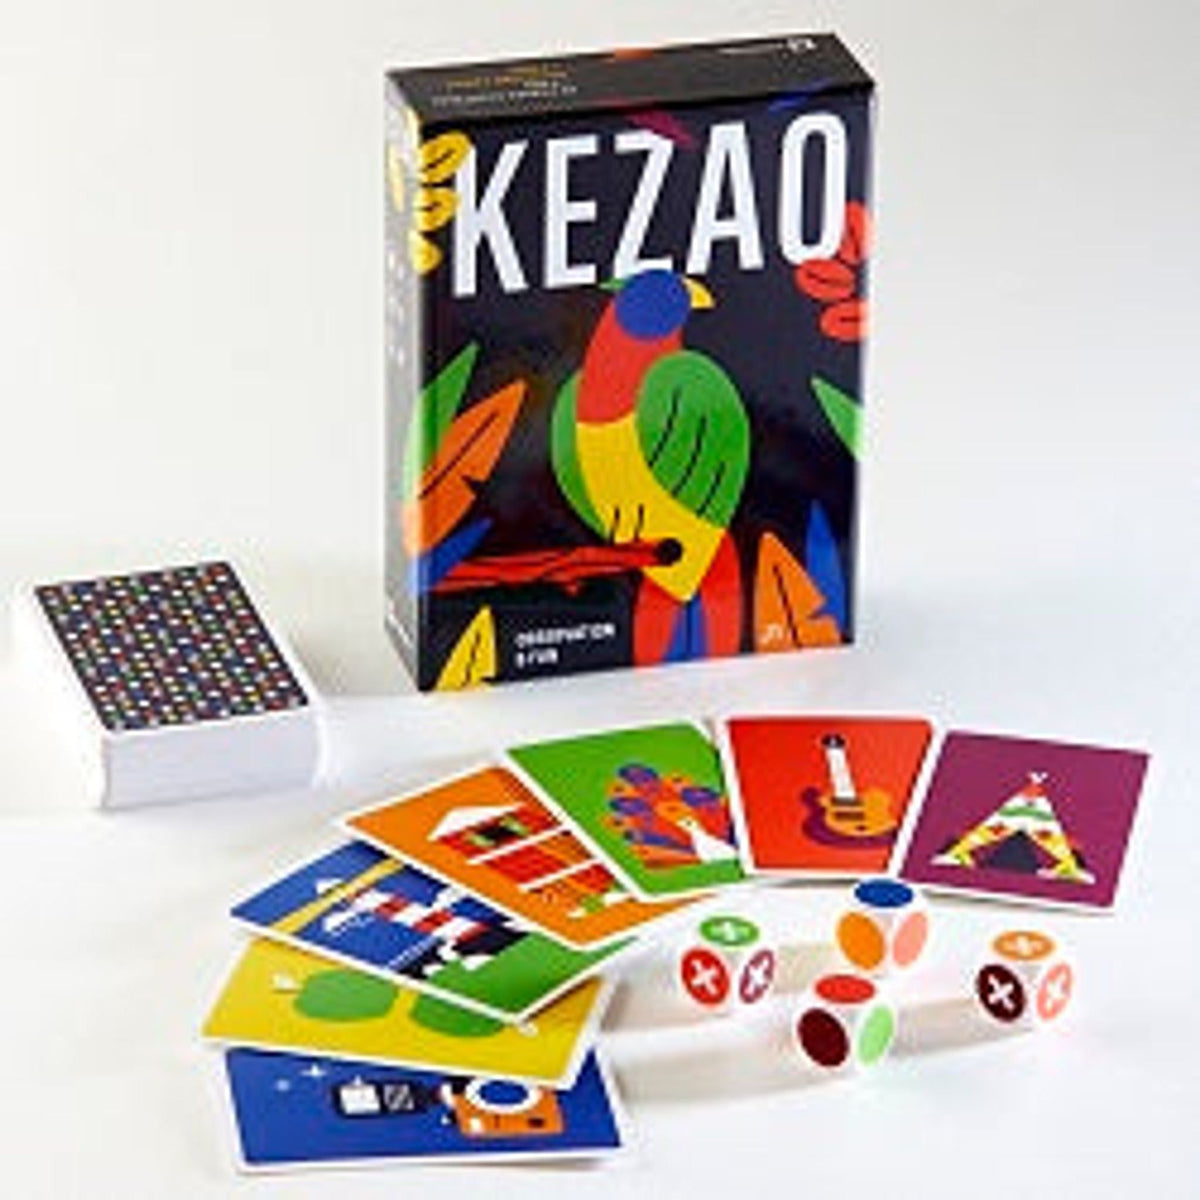 Kezao - Toybox Tales